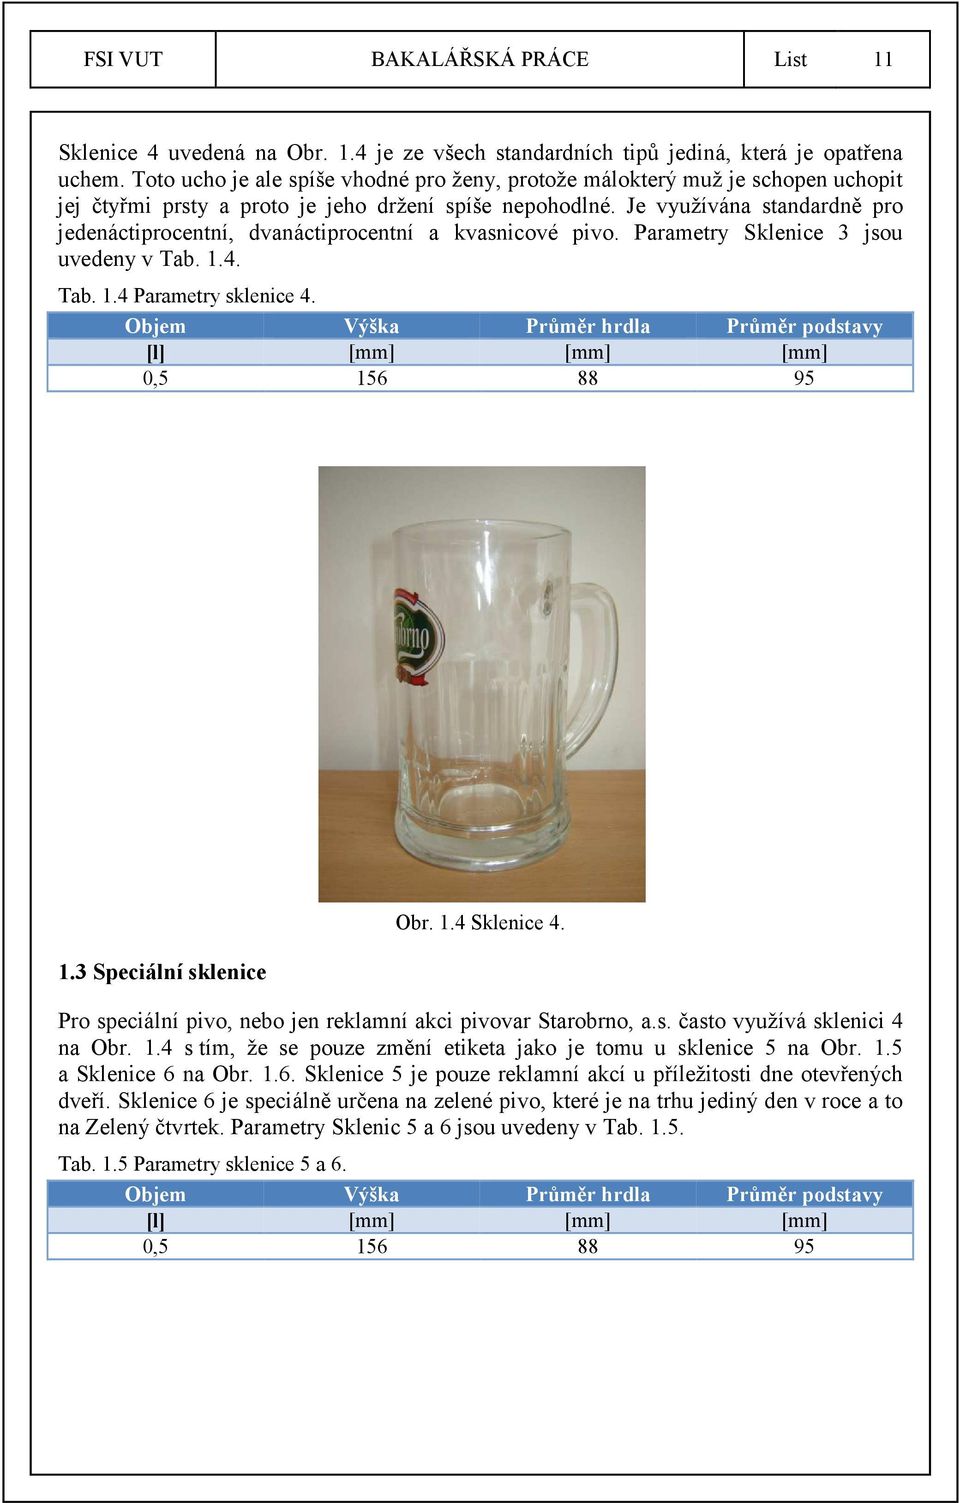 Je využívána standardně pro jedenáctiprocentní, dvanáctiprocentní a kvasnicové pivo. Parametry Sklenice 3 jsou uvedeny v Tab. 1.4. Tab. 1.4 Parametry sklenice 4.